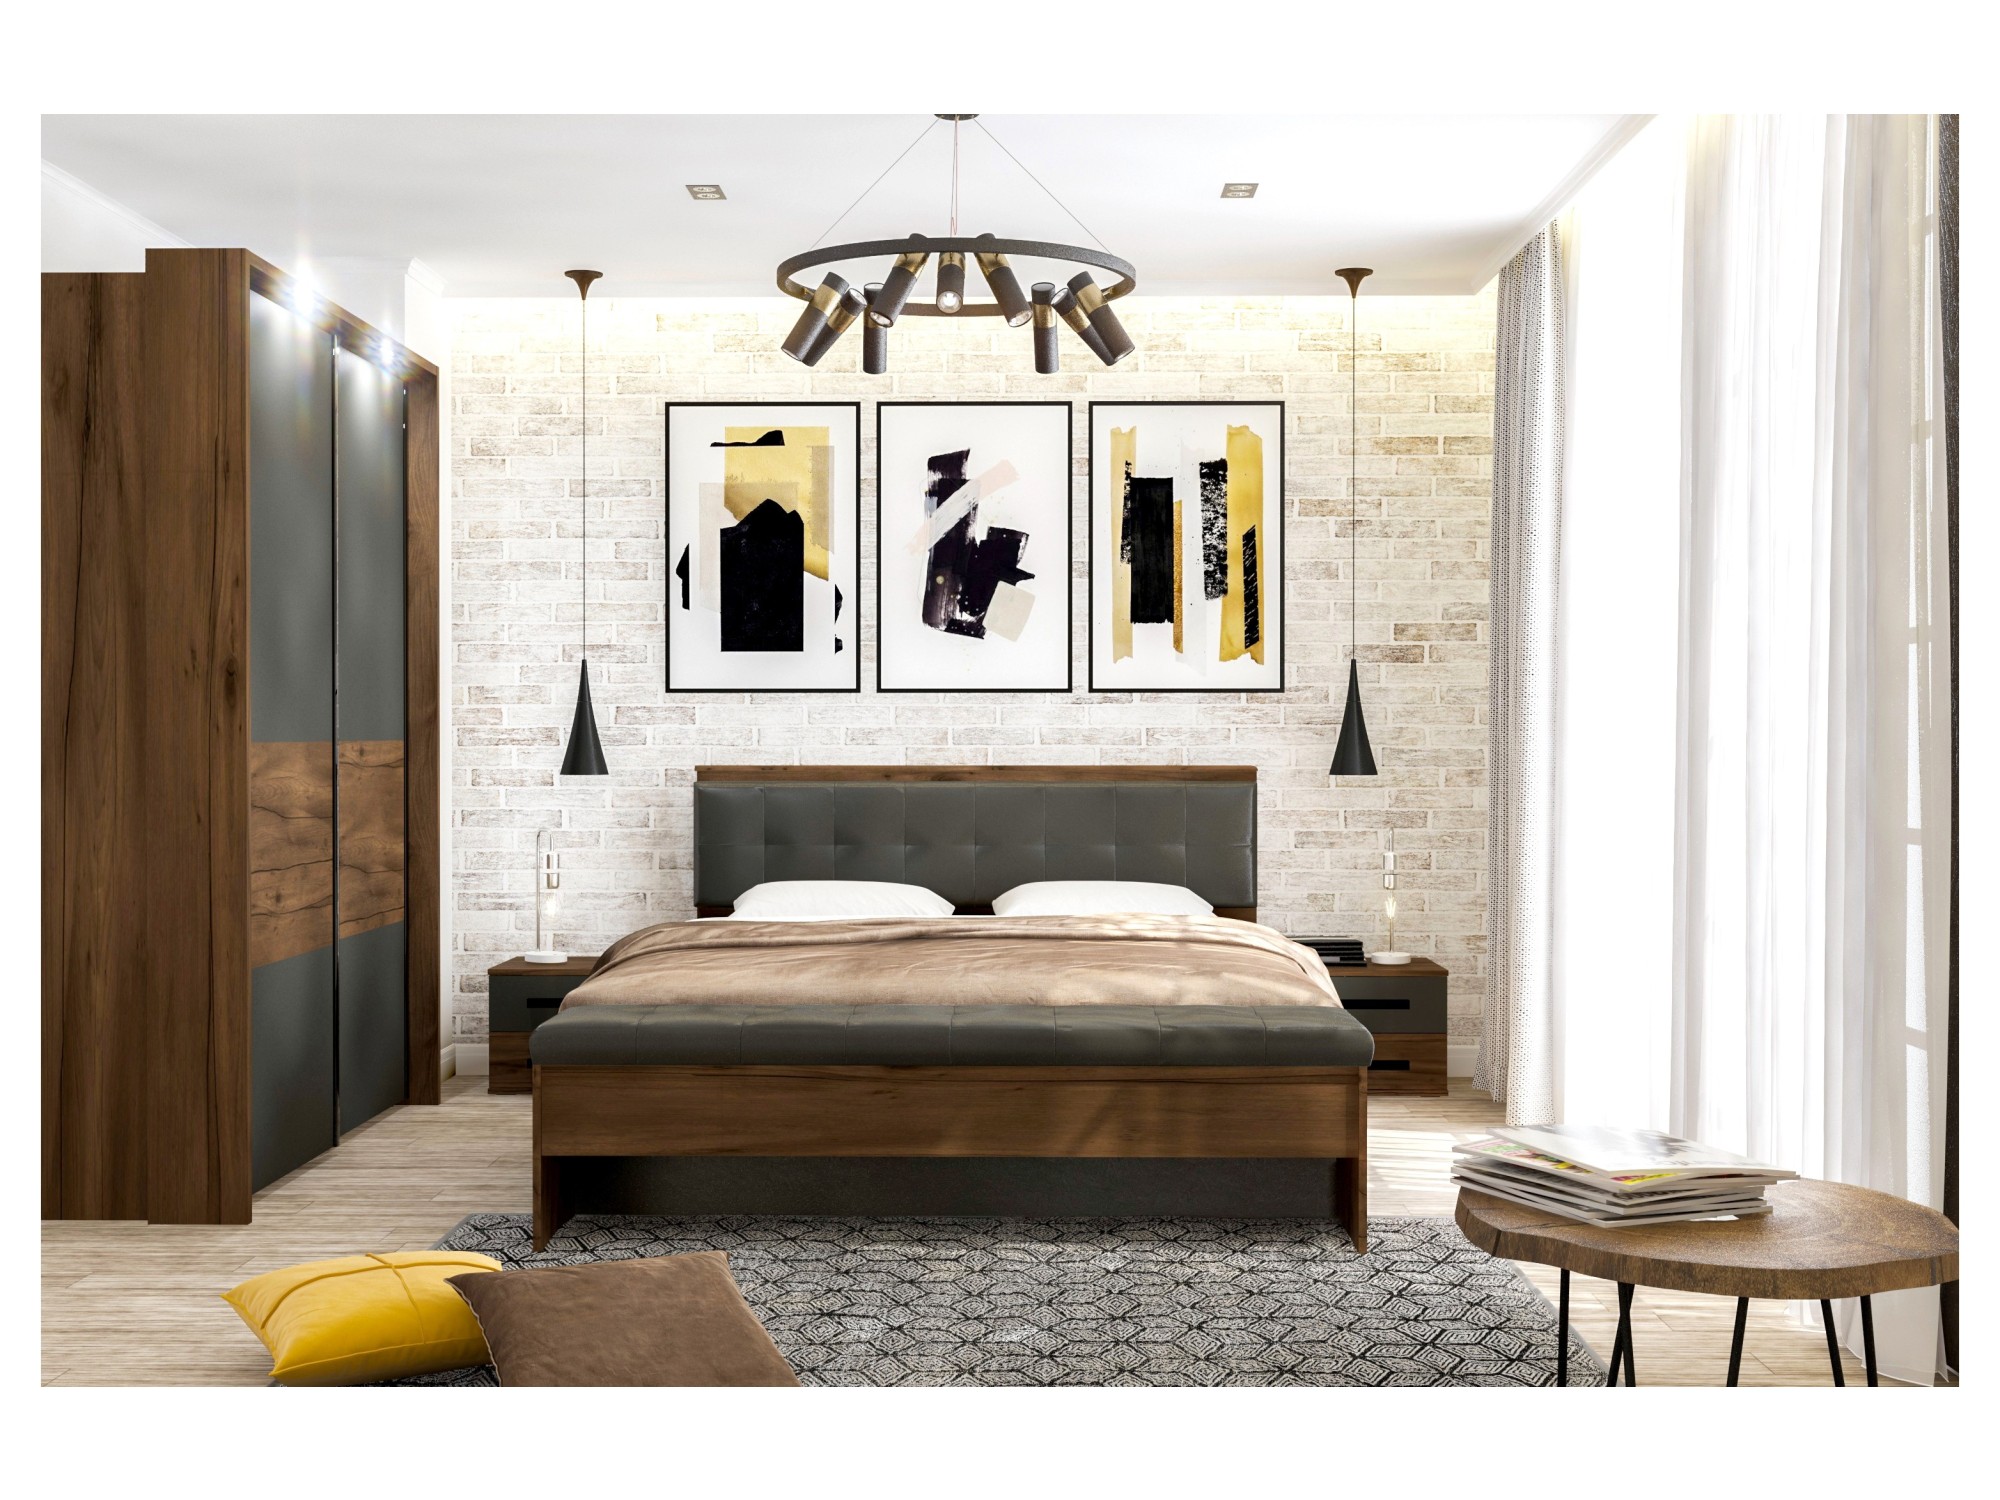 Модульная спальня Глазго, композиция 2 Коричневый, МДФ, ЛДСП спальня амьен 2 серый коричневый мдф лдсп